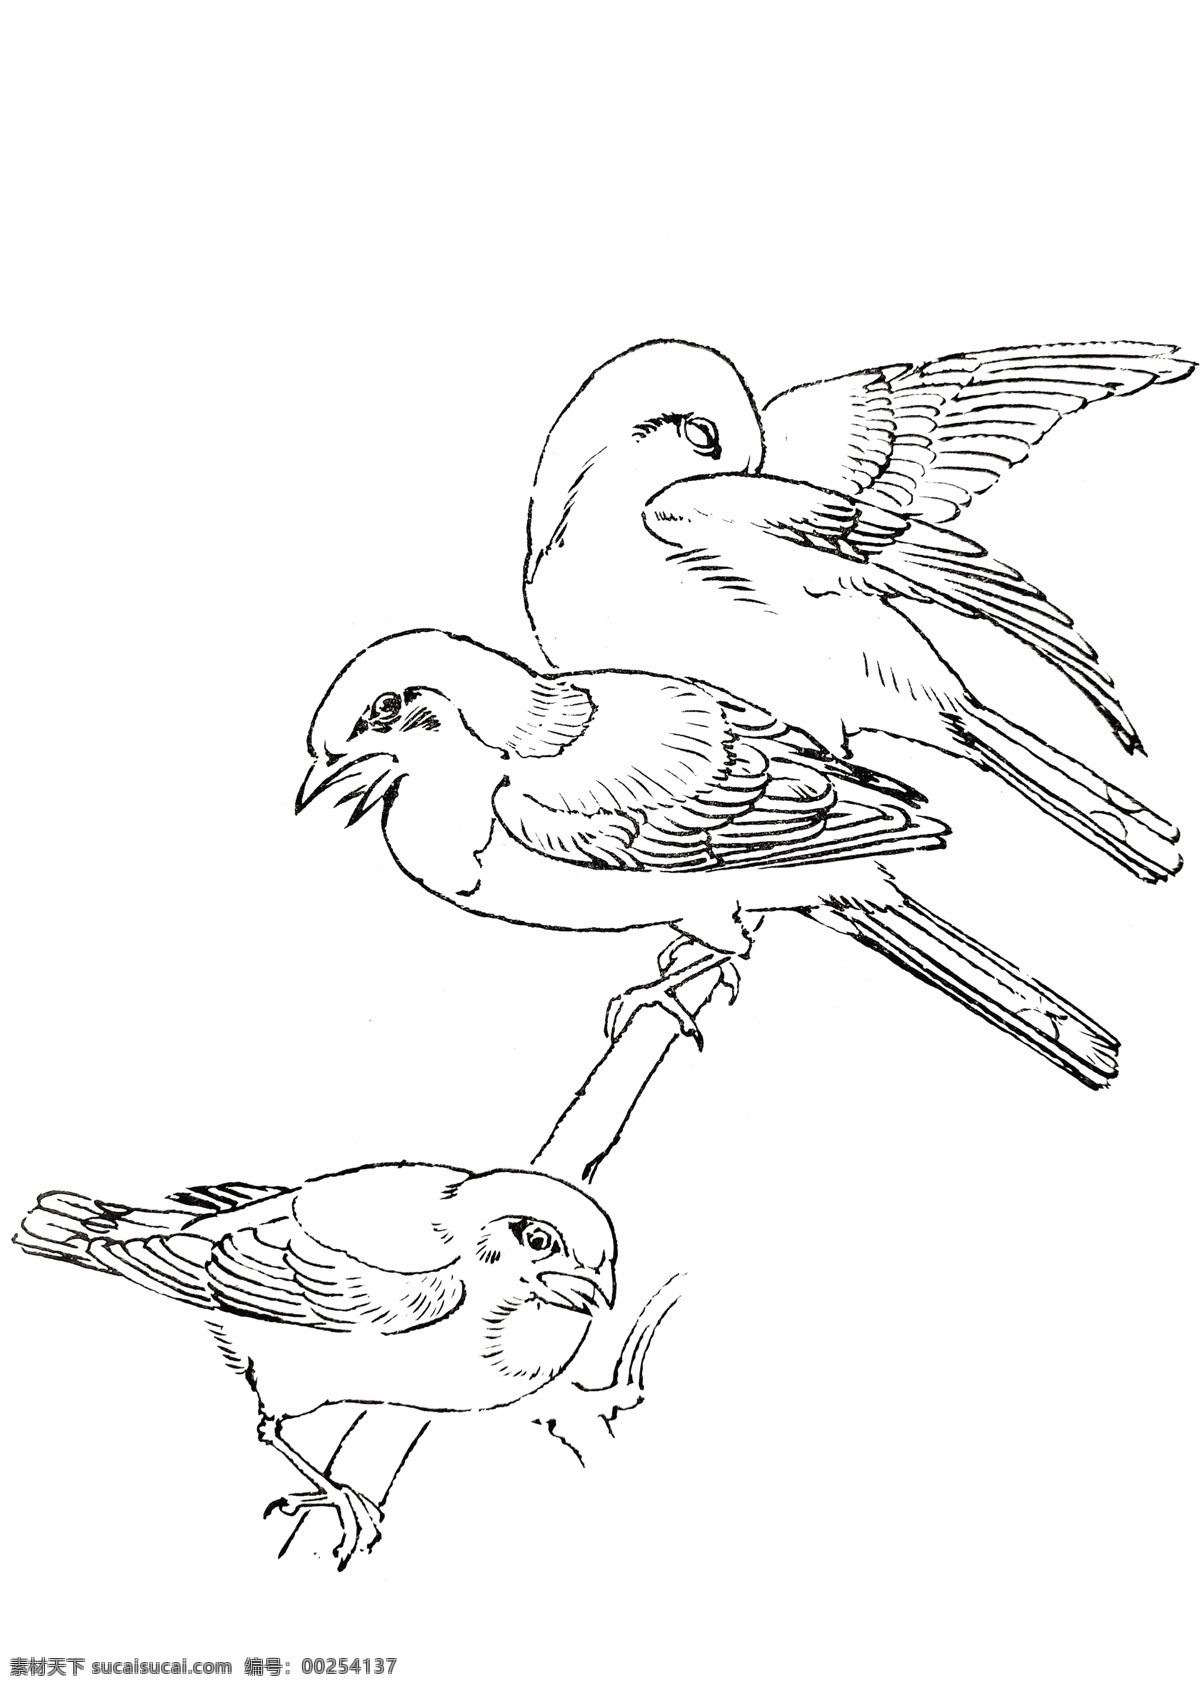 麻雀 飞鸟 线描 手绘 鸟 白描 飞禽 手稿 分层